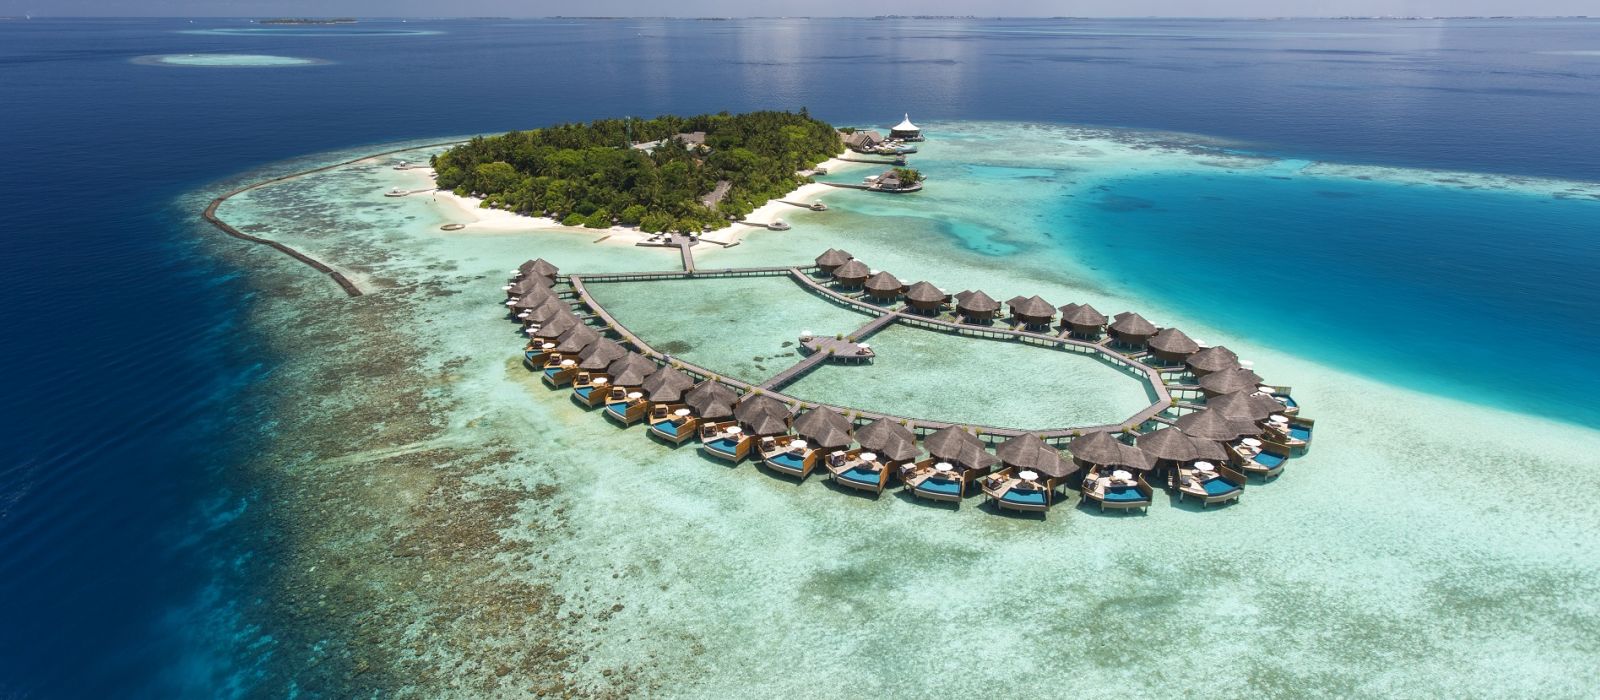 Maldives Cây Cọ Võng Bờ - Ảnh miễn phí trên Pixabay - Pixabay